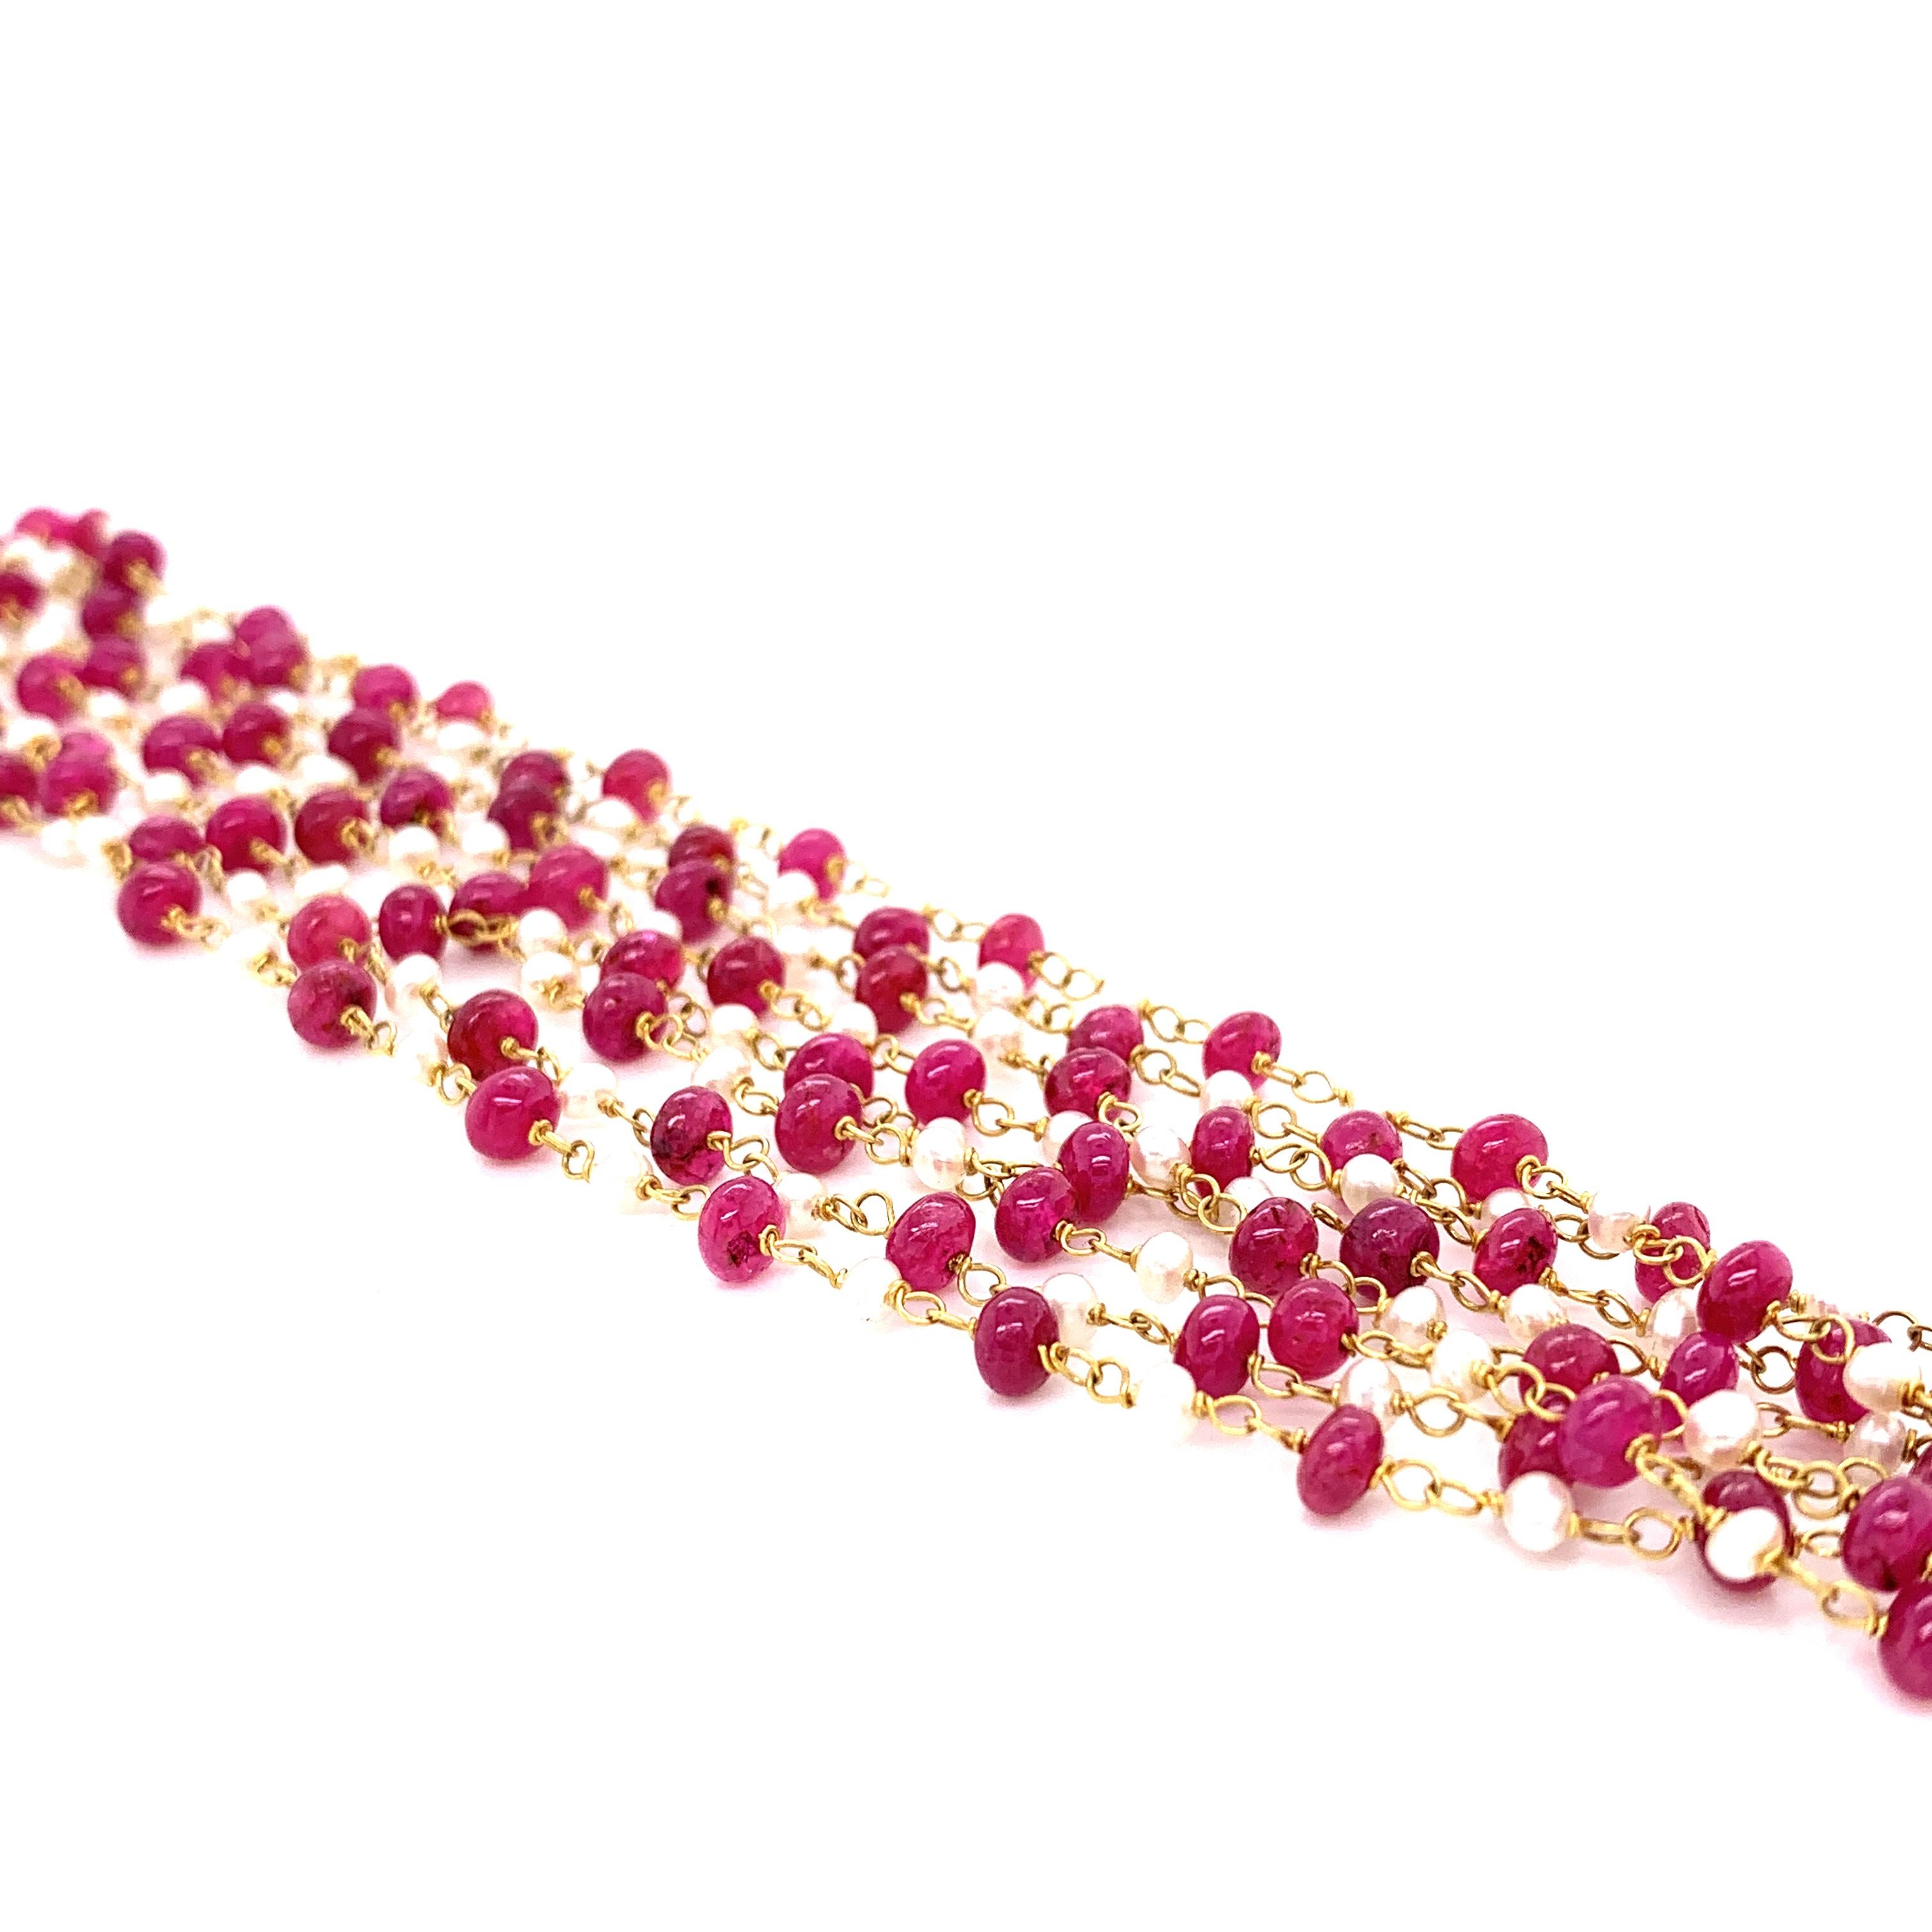 Collier en or 22K composé de perles de rubis et de perles des mers du Sud de culture :   

Ce magnifique collier est composé de perles de rubis rouge feu pesant 54,05 carats, et de perles blanches des mers du Sud de 14 carats intercalées entre les